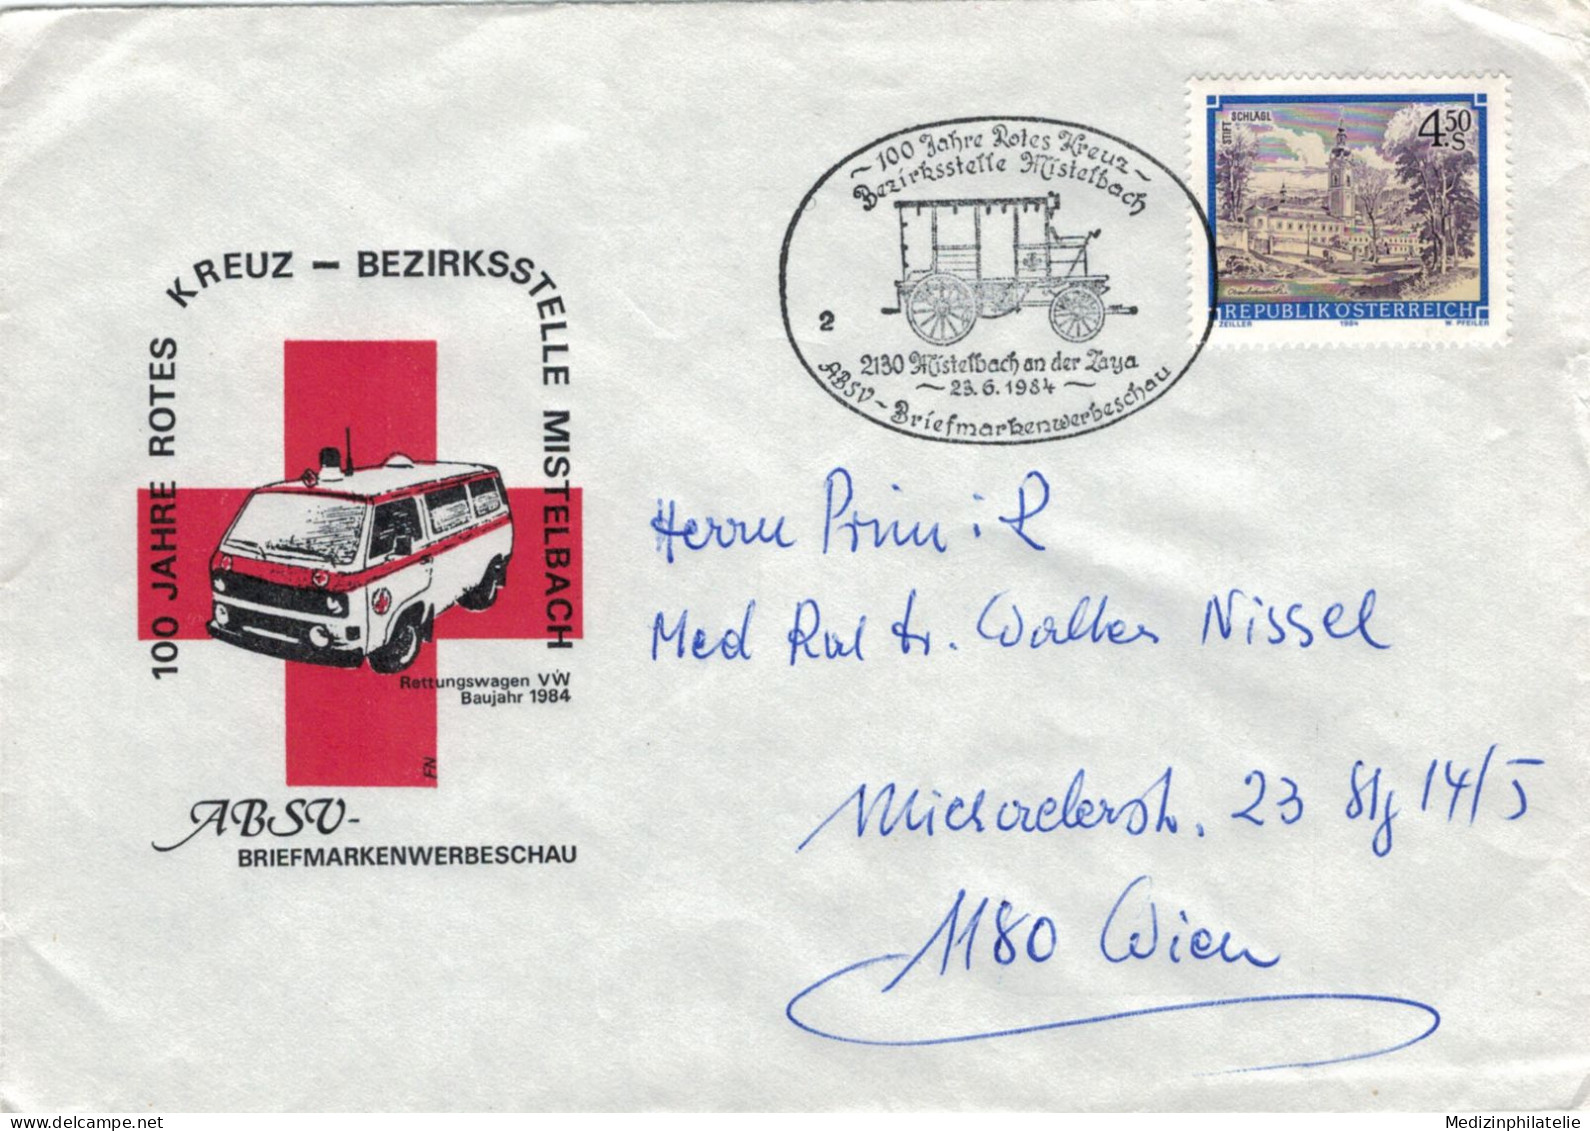 Rotes Kreuz - 2130 Mistelbach 1984 Bezirksstelle - First Aid